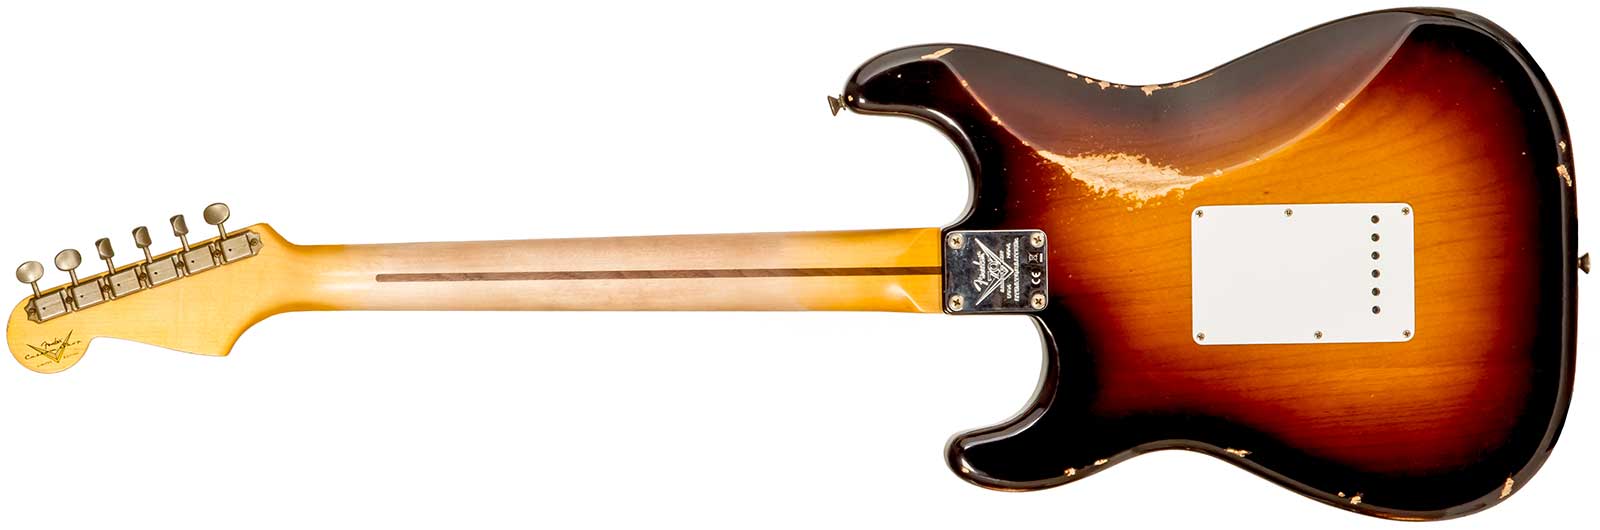 Fender Custom Shop Strat 1954 70th Anniv. 3s Trem Mn #xn4158 - Relic Wide-fade 2-color Sunburst - Str shape electric guitar - Variation 1